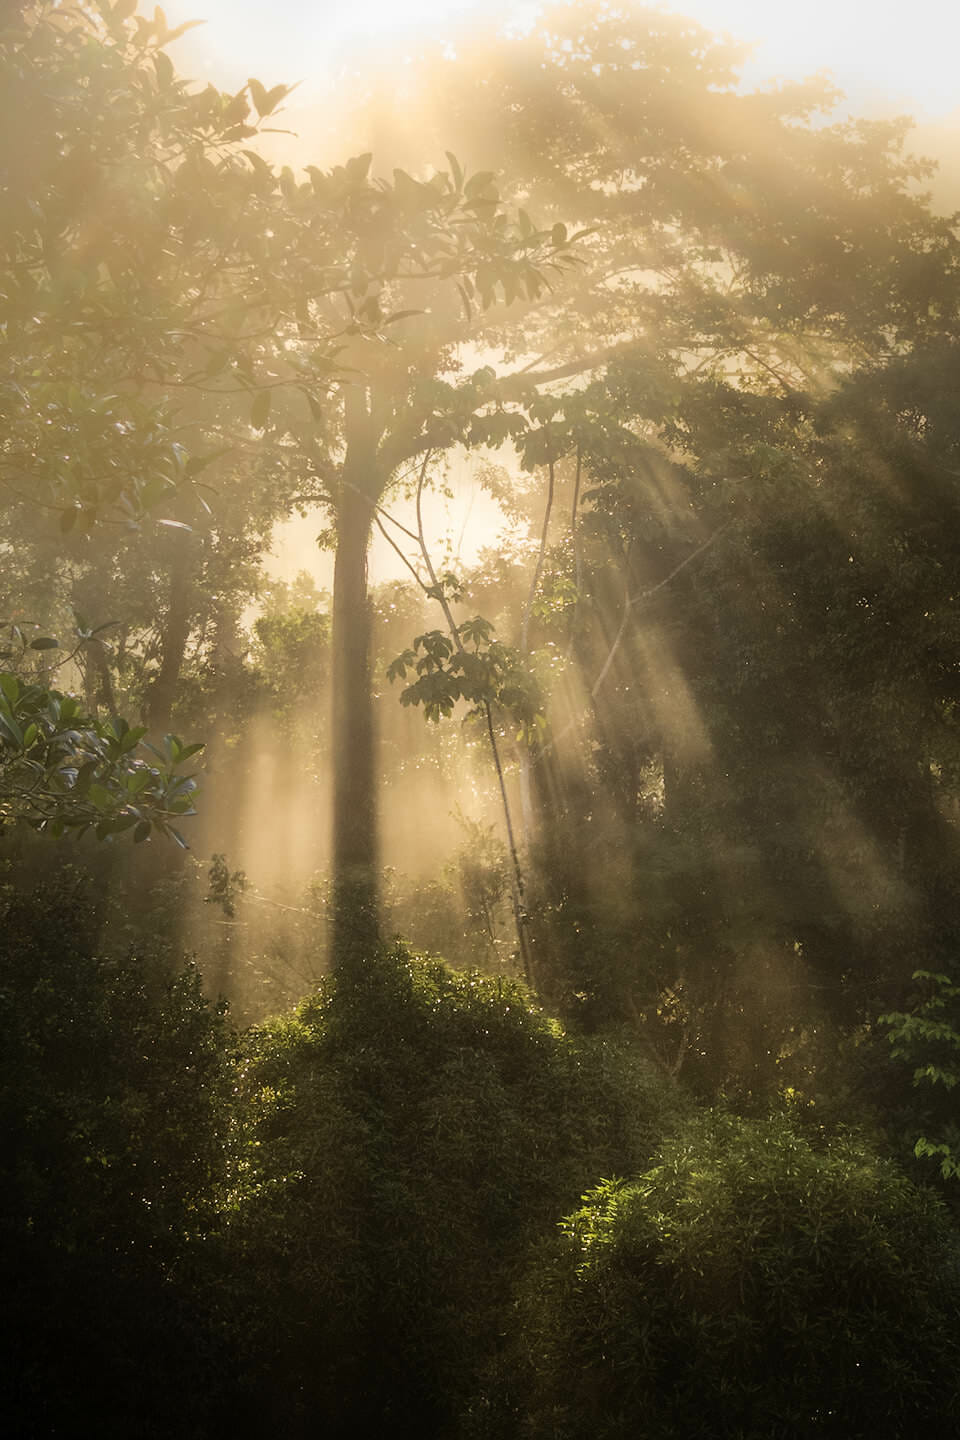 Light filtering through rainforest vegetation.